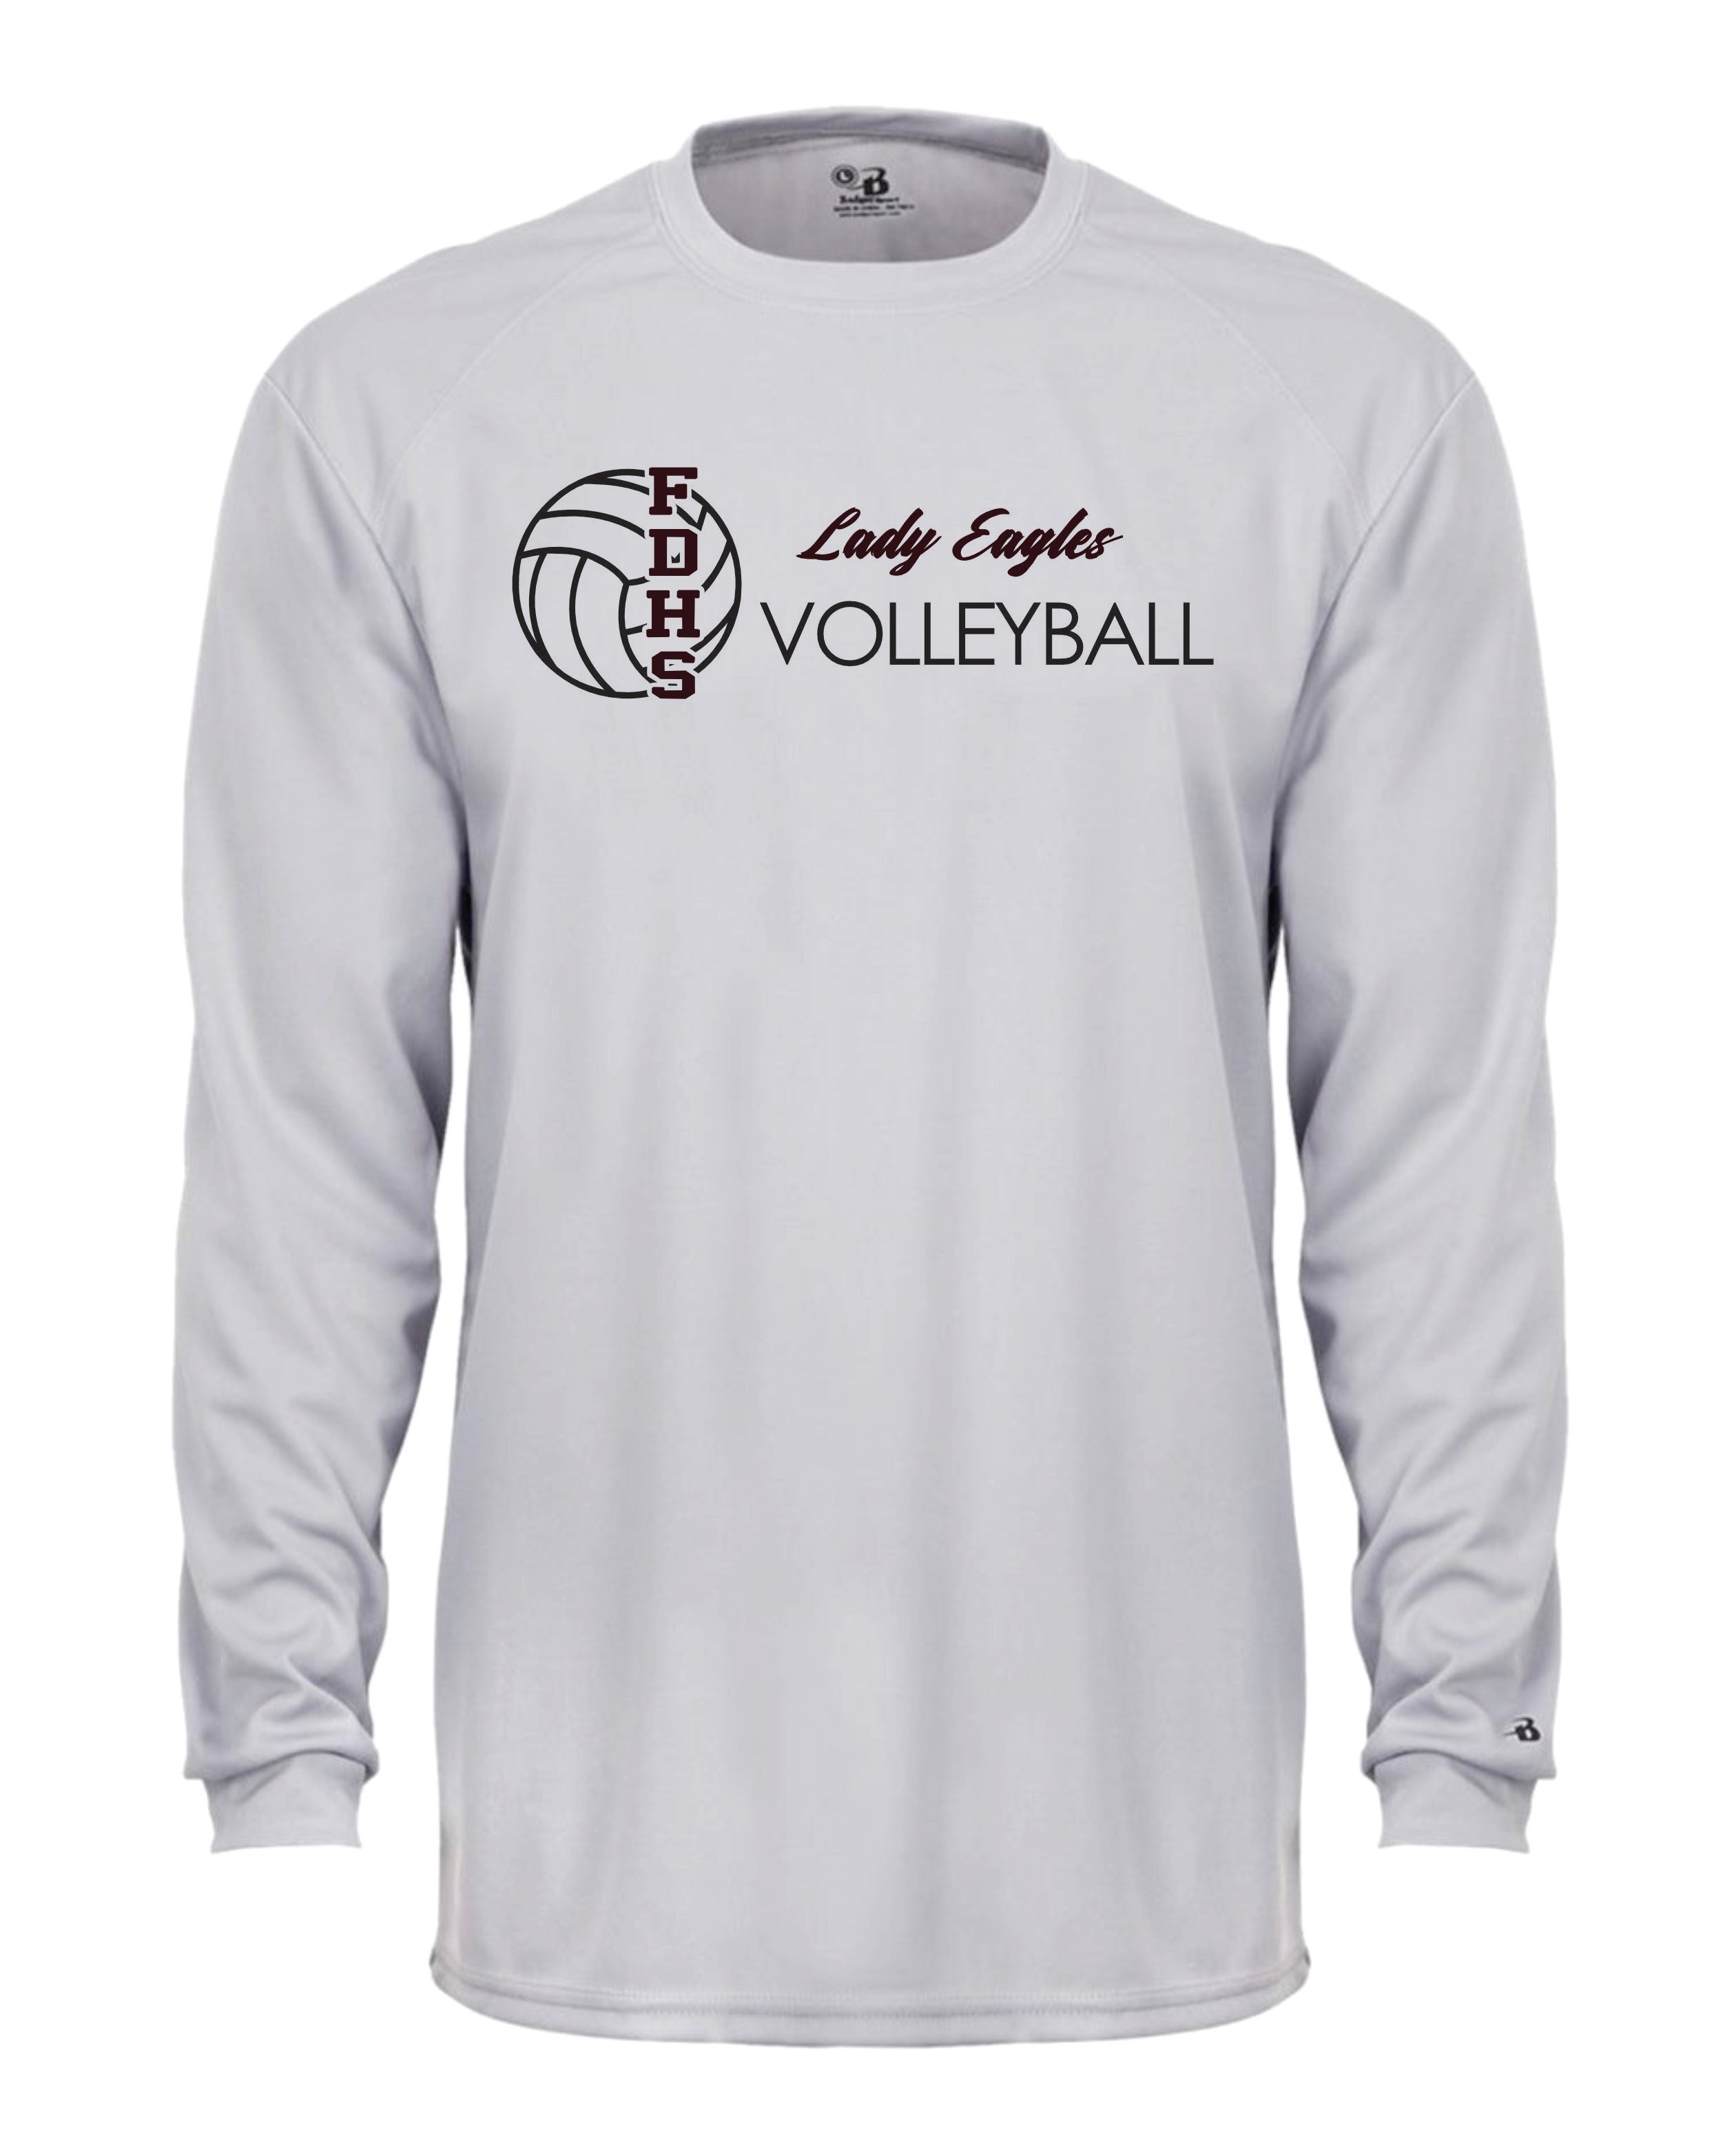 Douglass Volleyball Long Sleeve Badger  Shirt Dri Fit Shirt